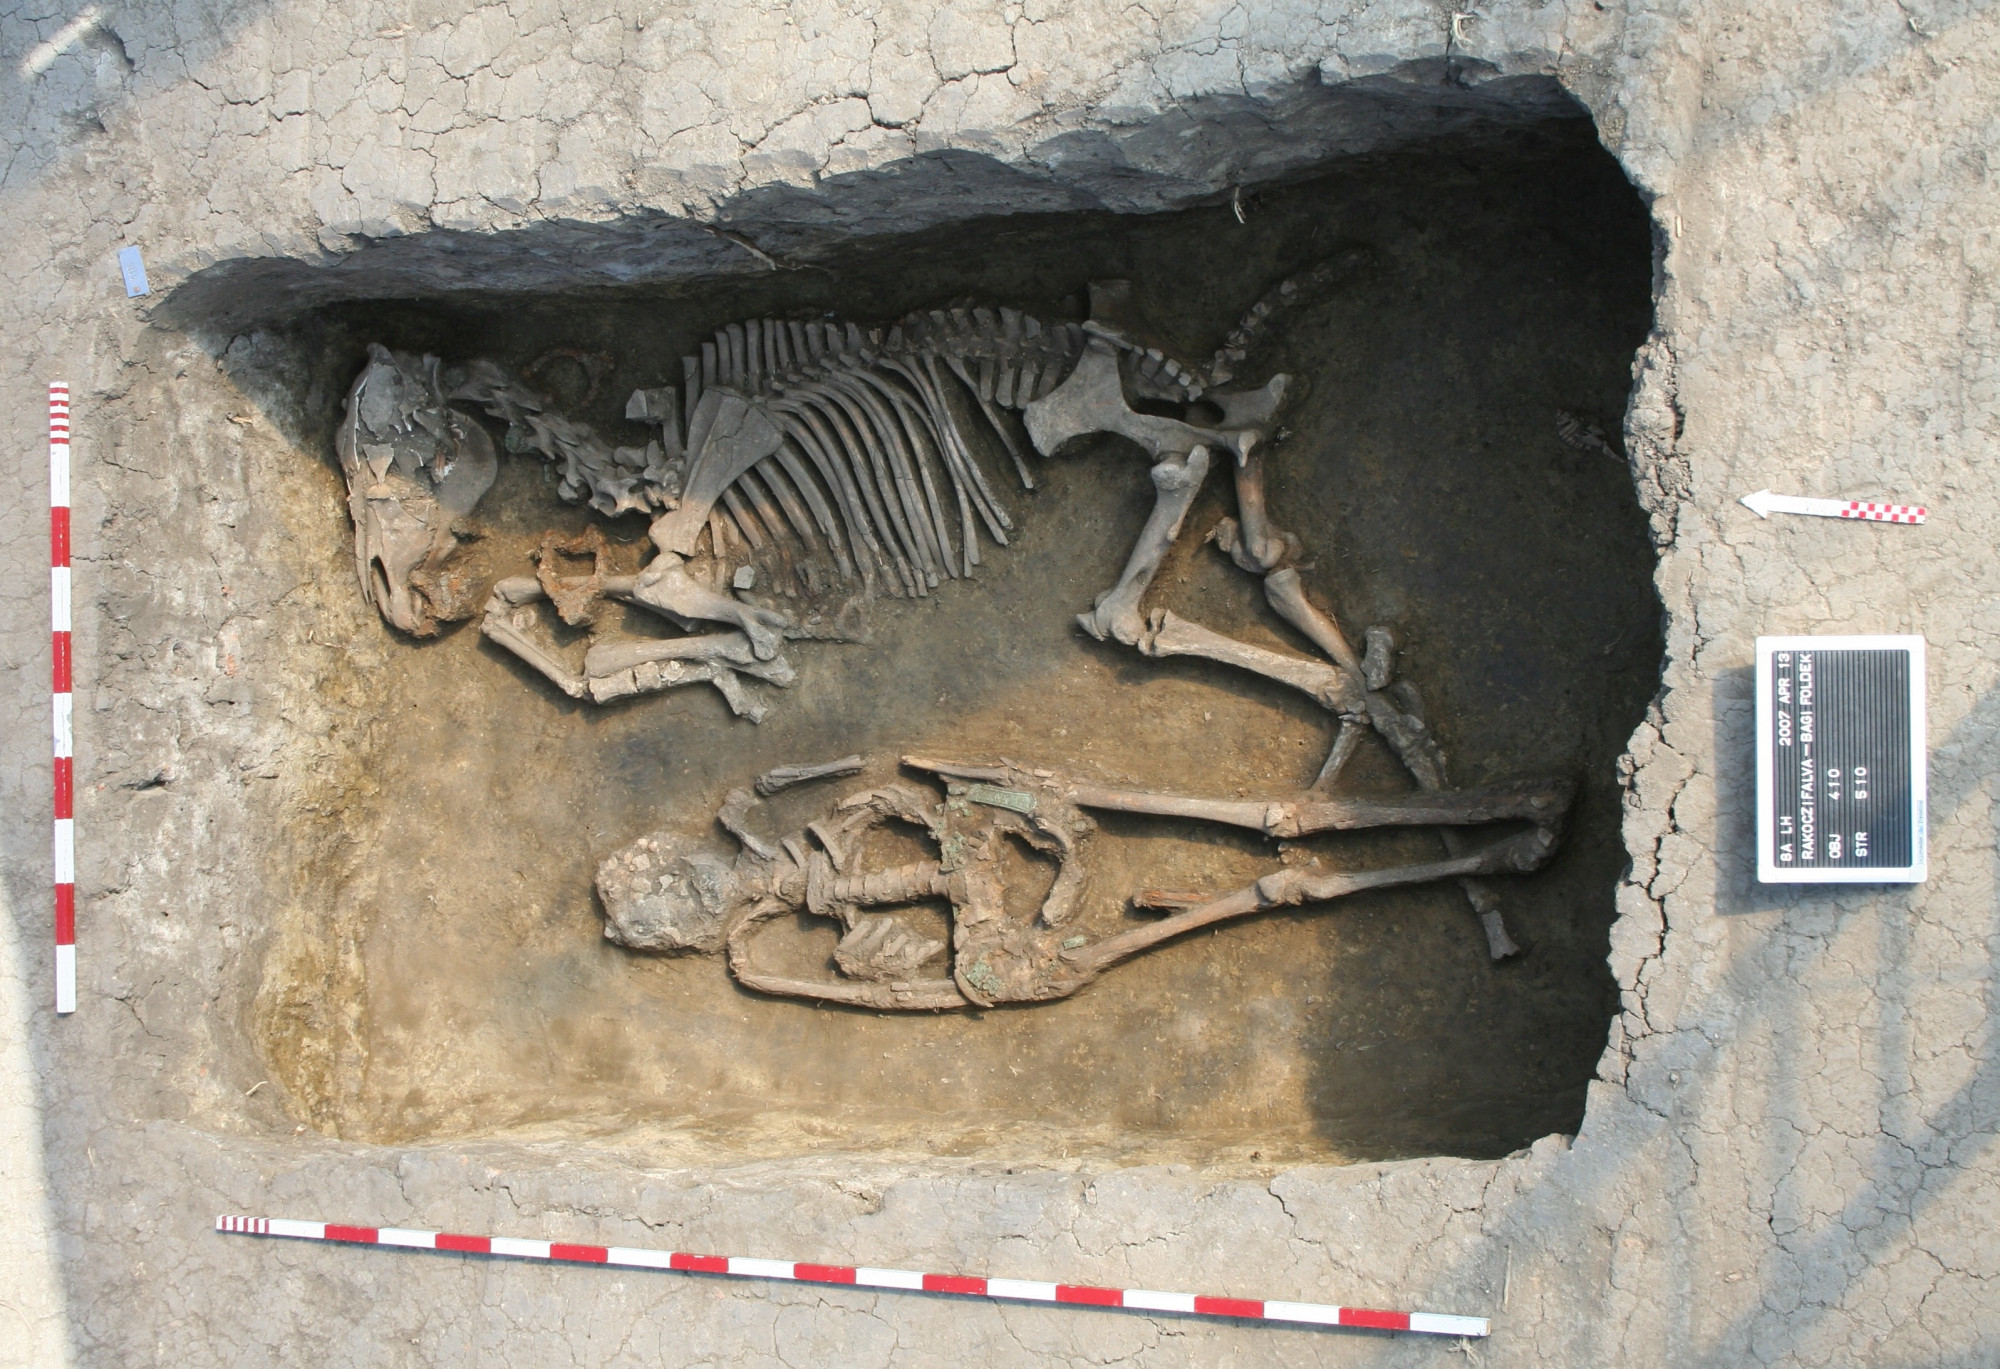 Egyedülálló kutatás tárta fel közel 300 avar kori sír teljes genetikáját és családi viszonyait a Kárpát-medencében